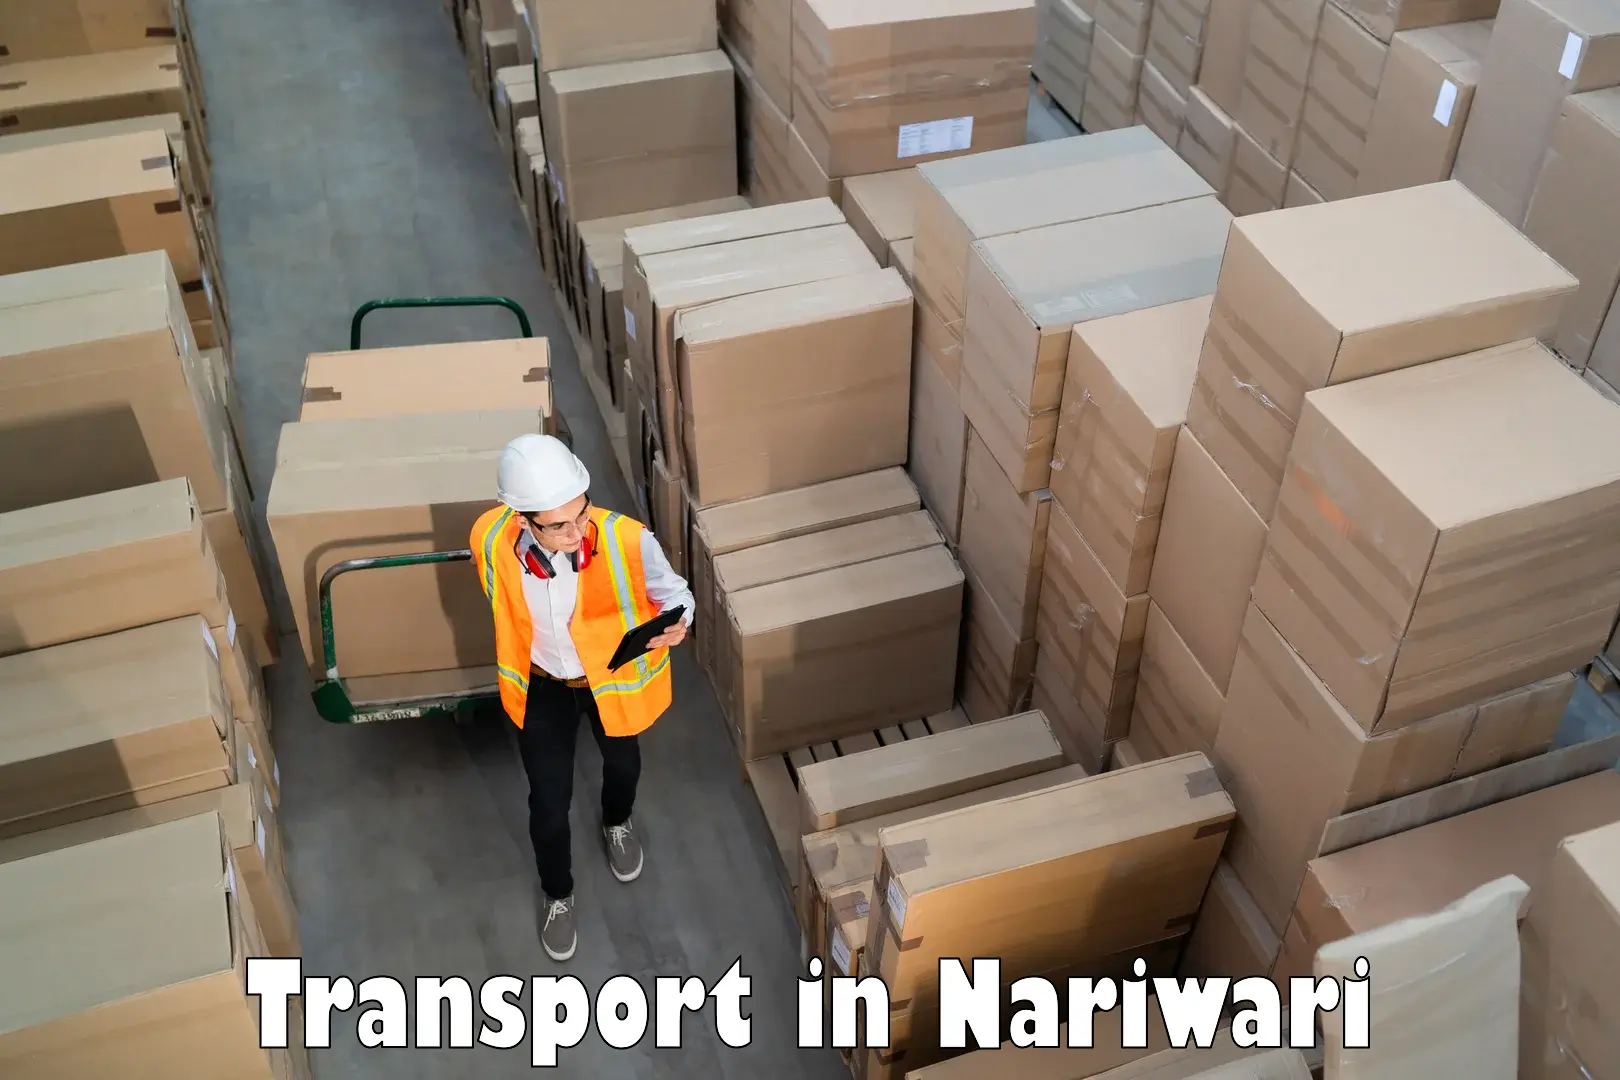 Land transport services in Nariwari